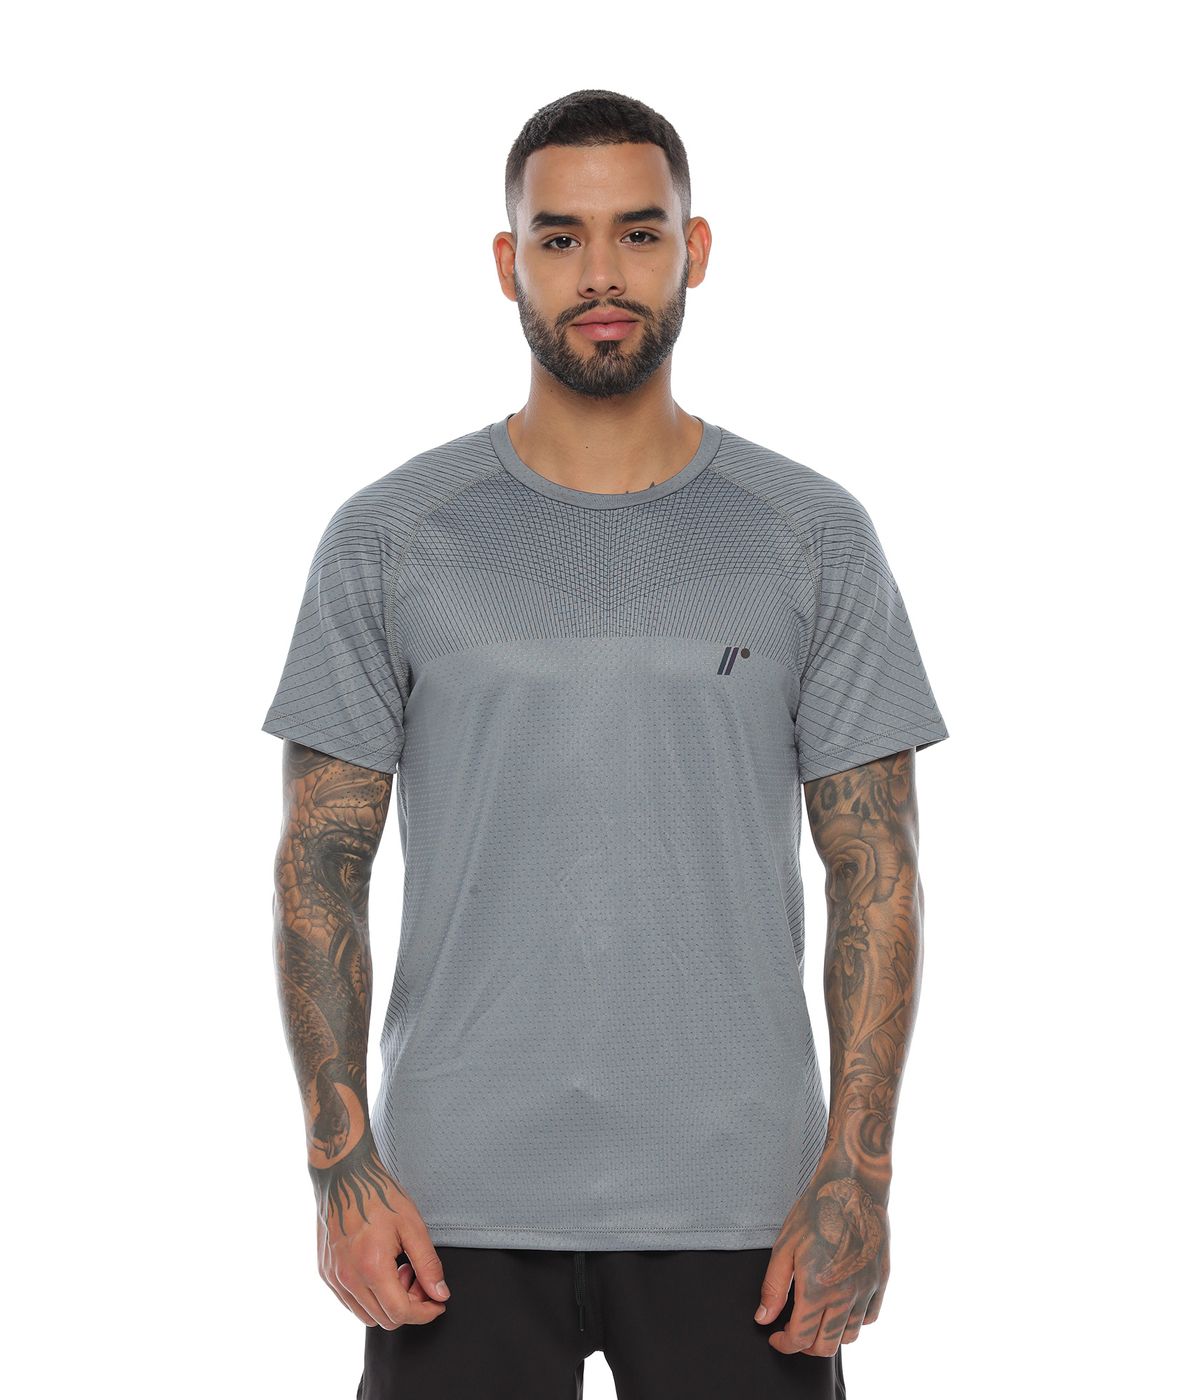 Camiseta Deportiva Hombre Gris – Maracaná